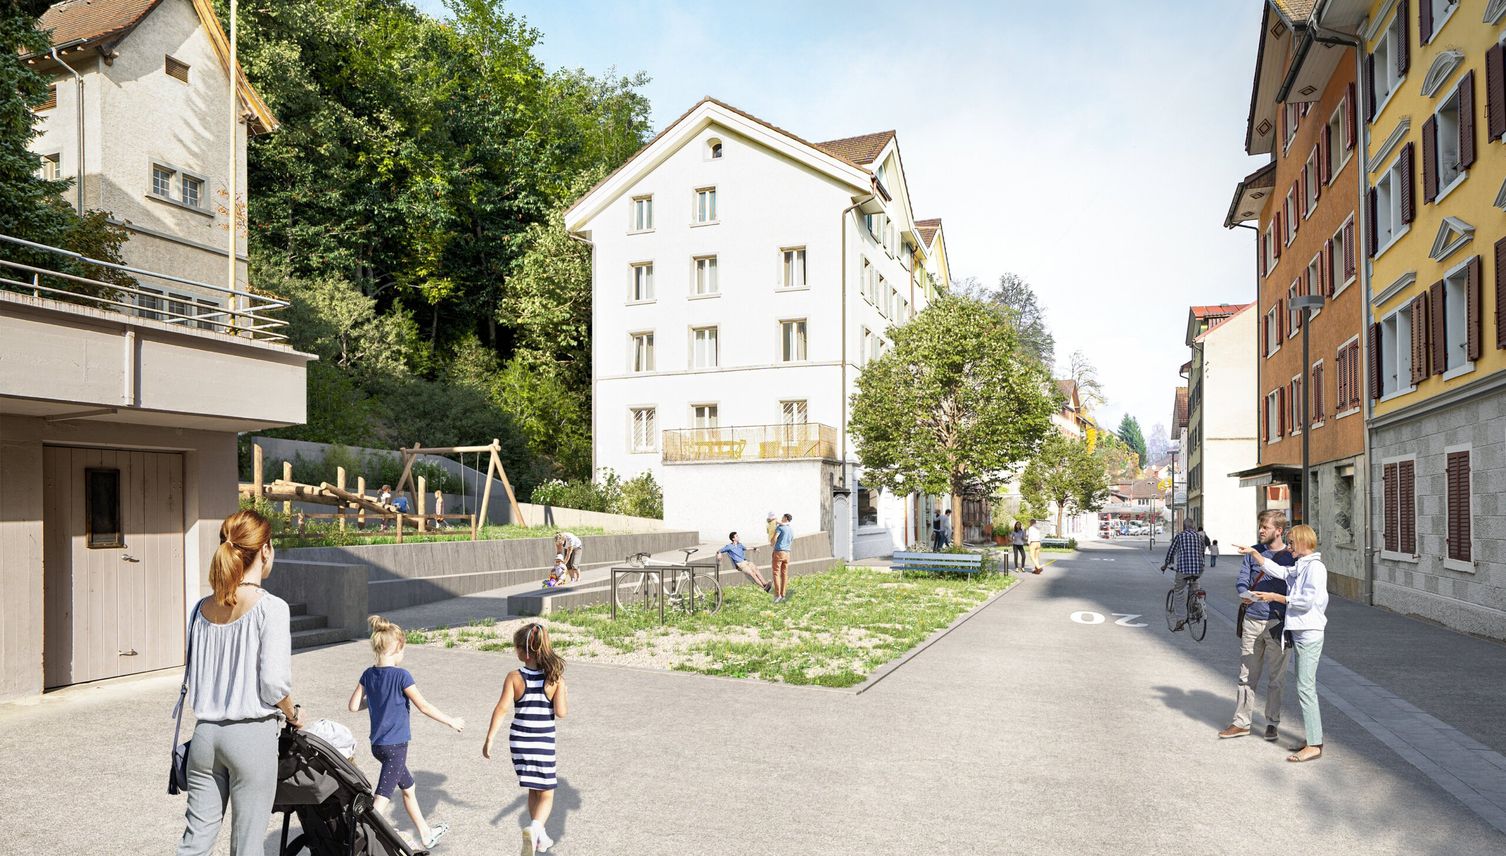 Luzerner Strasse wird nach Umgestaltung neu eröffnet